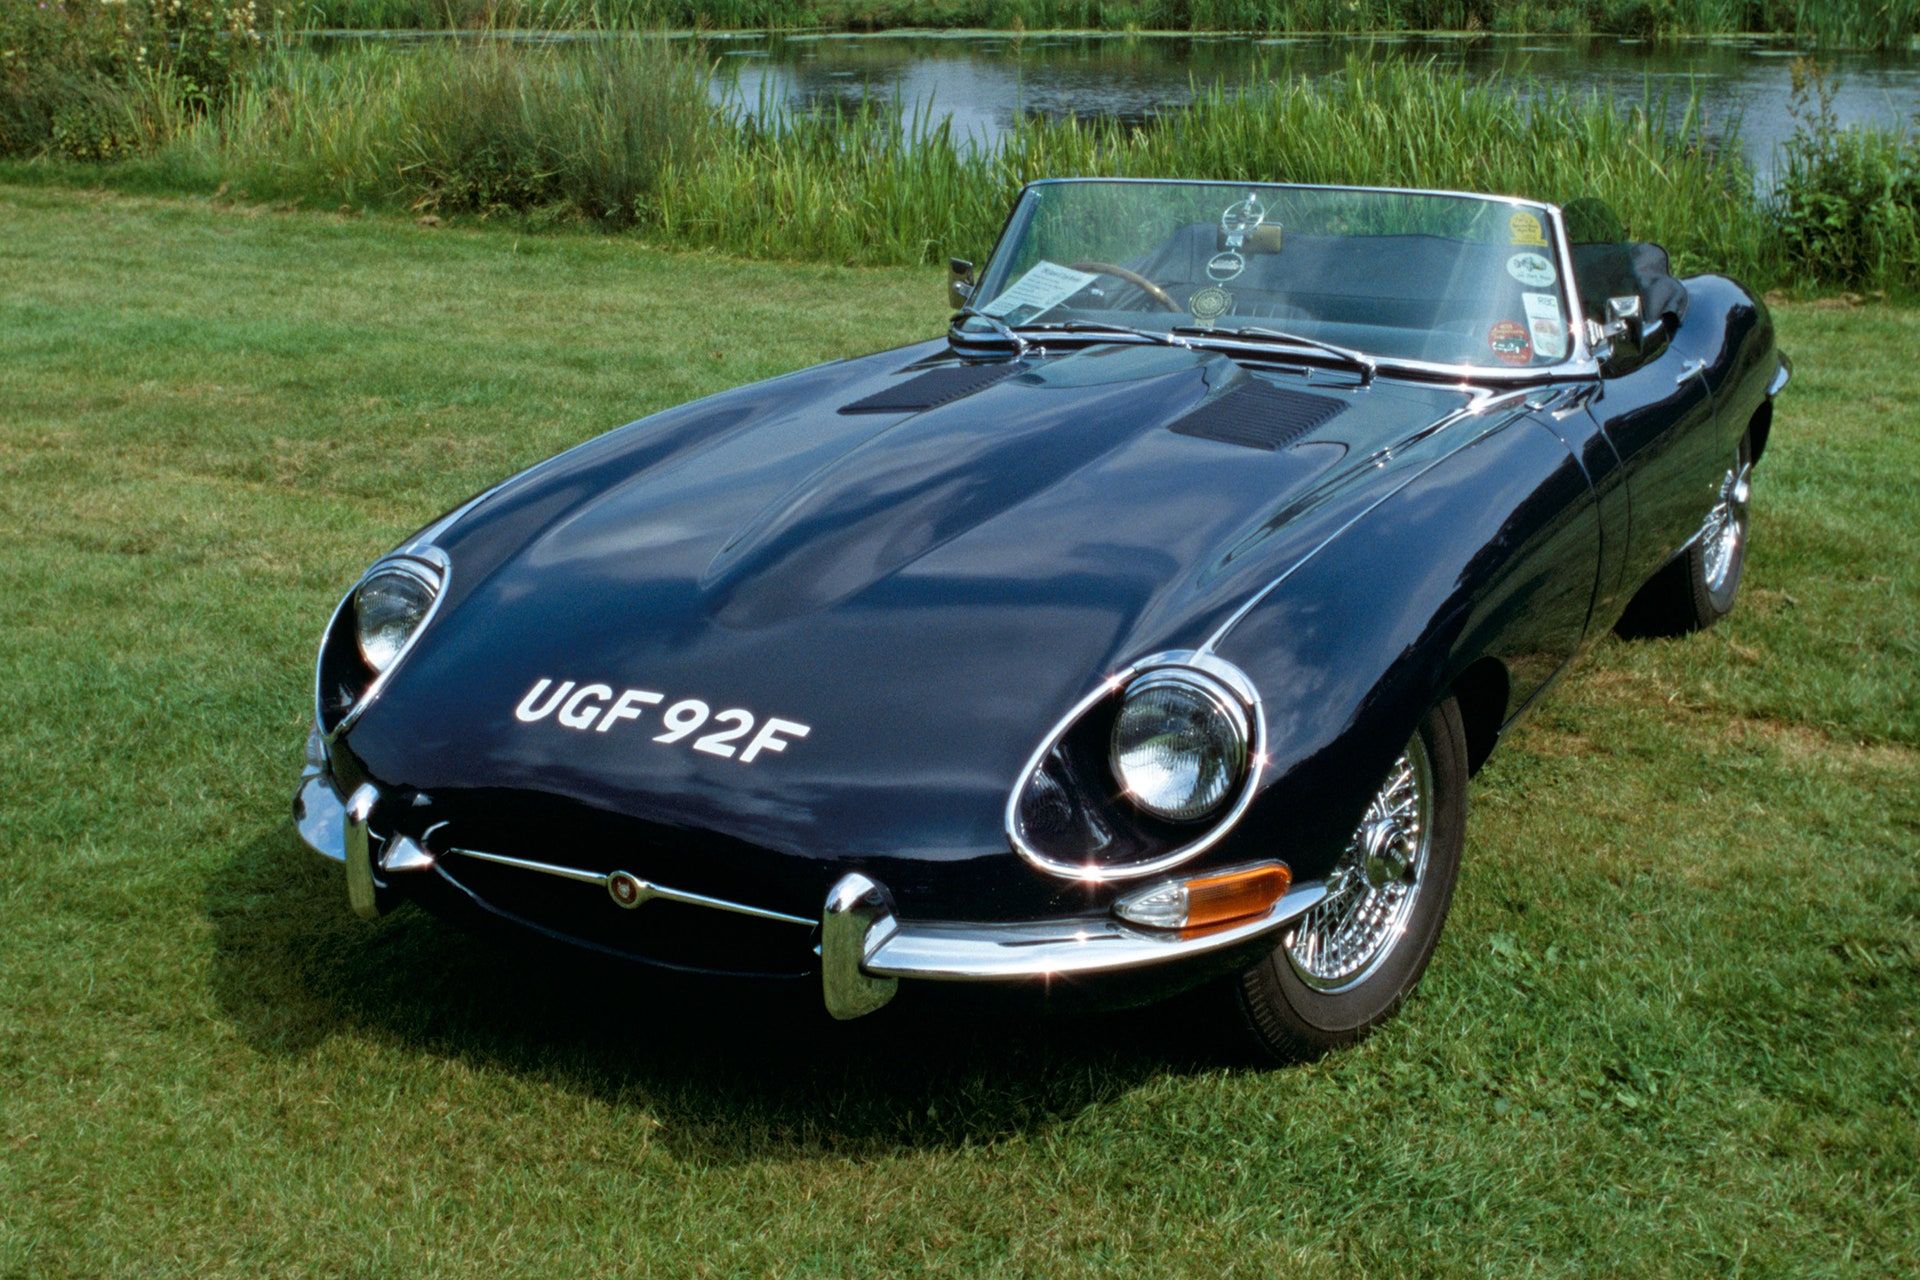 <img src="elon-musk-jag.jpg" alt="A Jaguar E-Type">